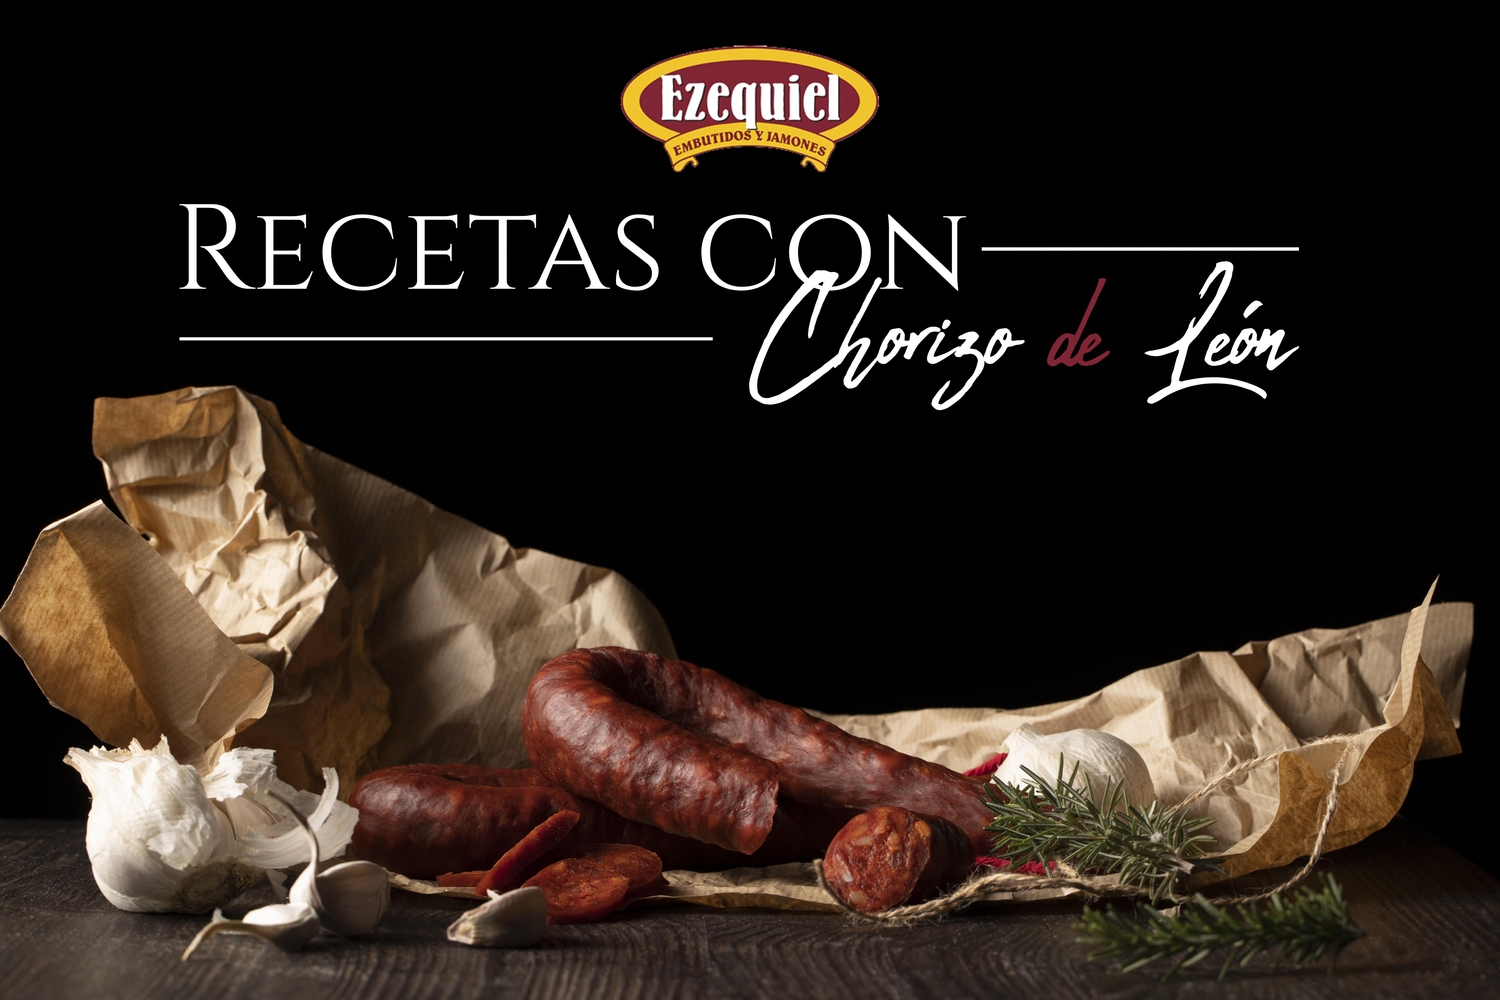 Recetas Con Chorizo de León fáciles y sencillas